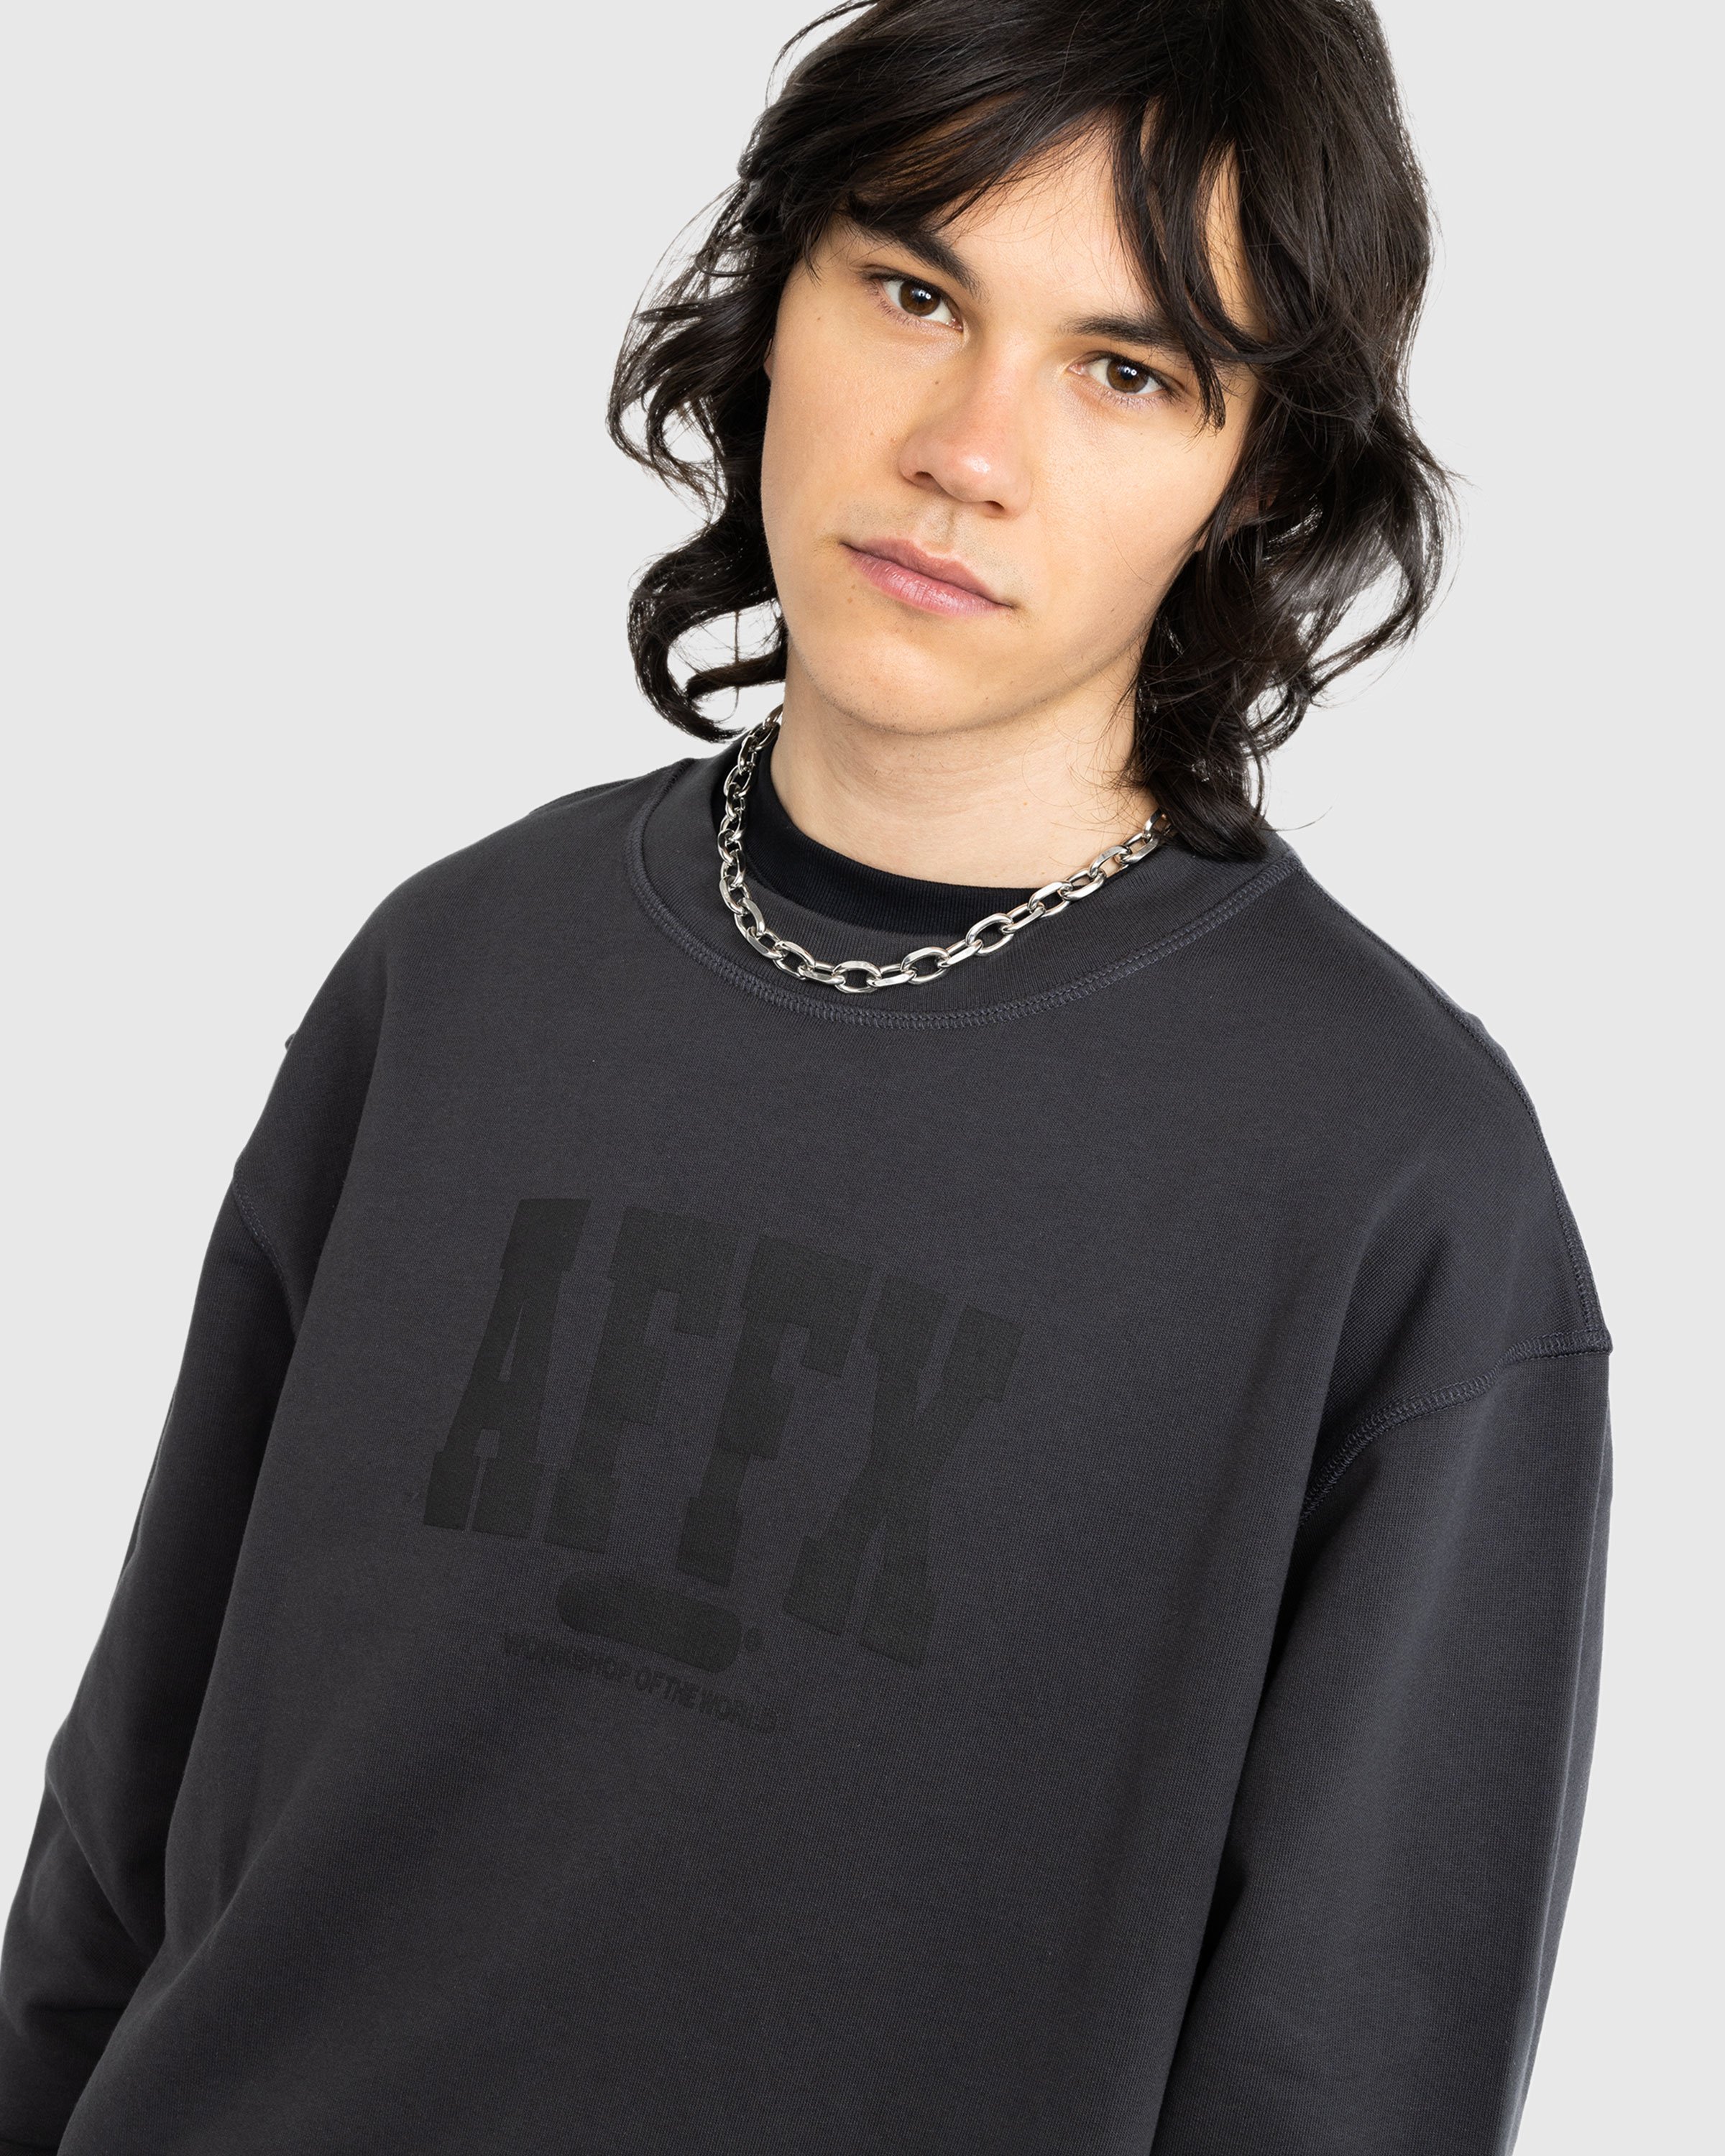 AFFXWRKS - Varsity Sweatshirt Soft Black - Clothing - Black - Image 2